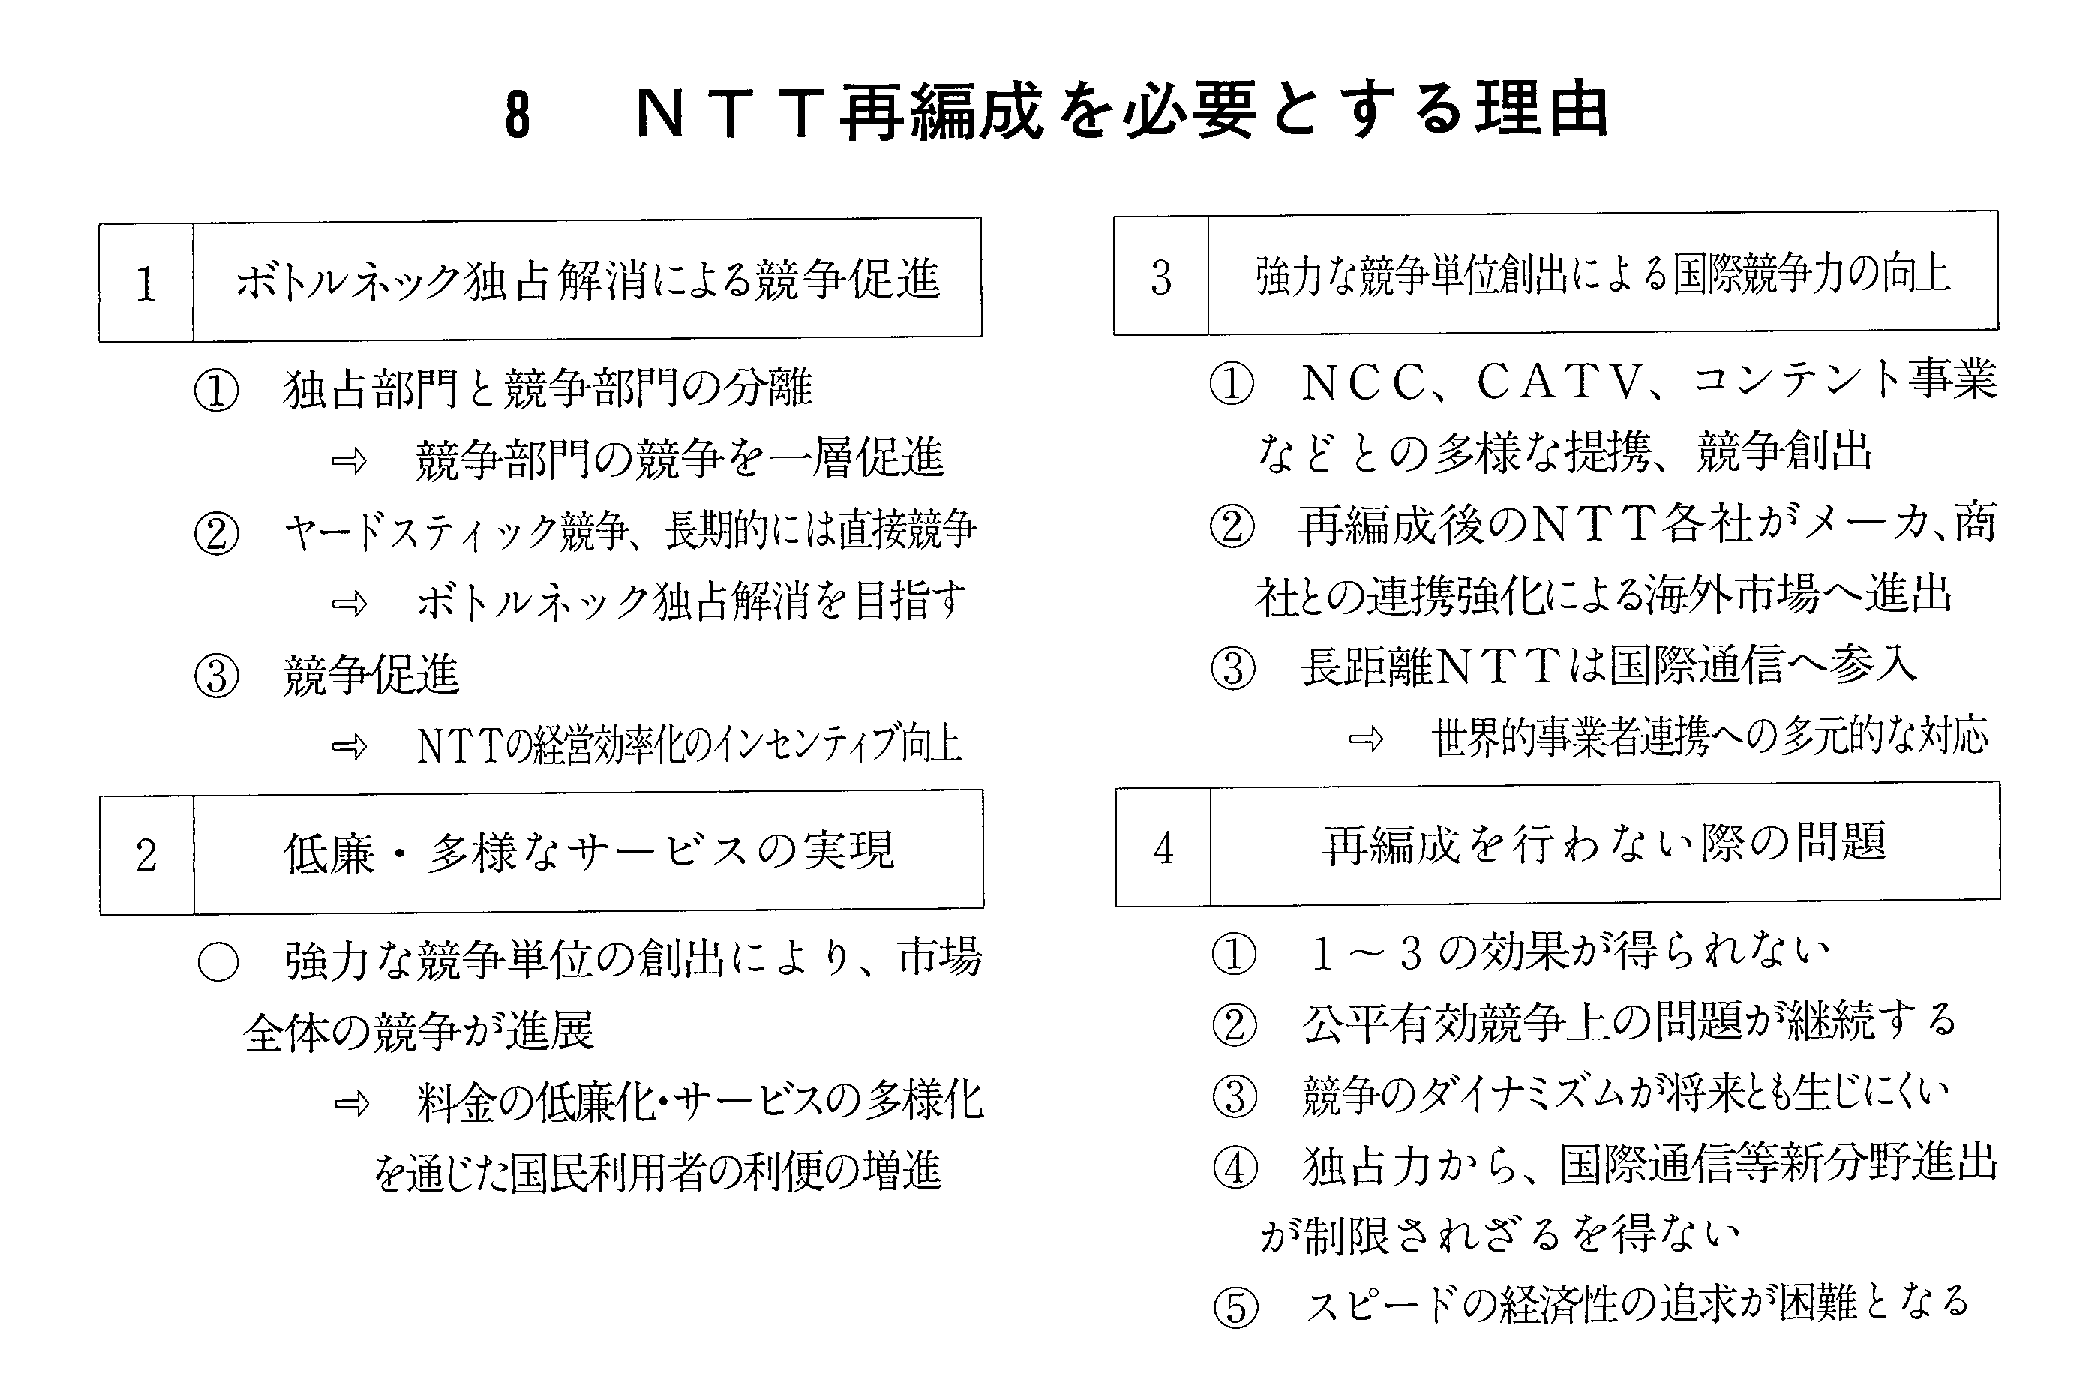 8 NTT再編成を必要とする理由